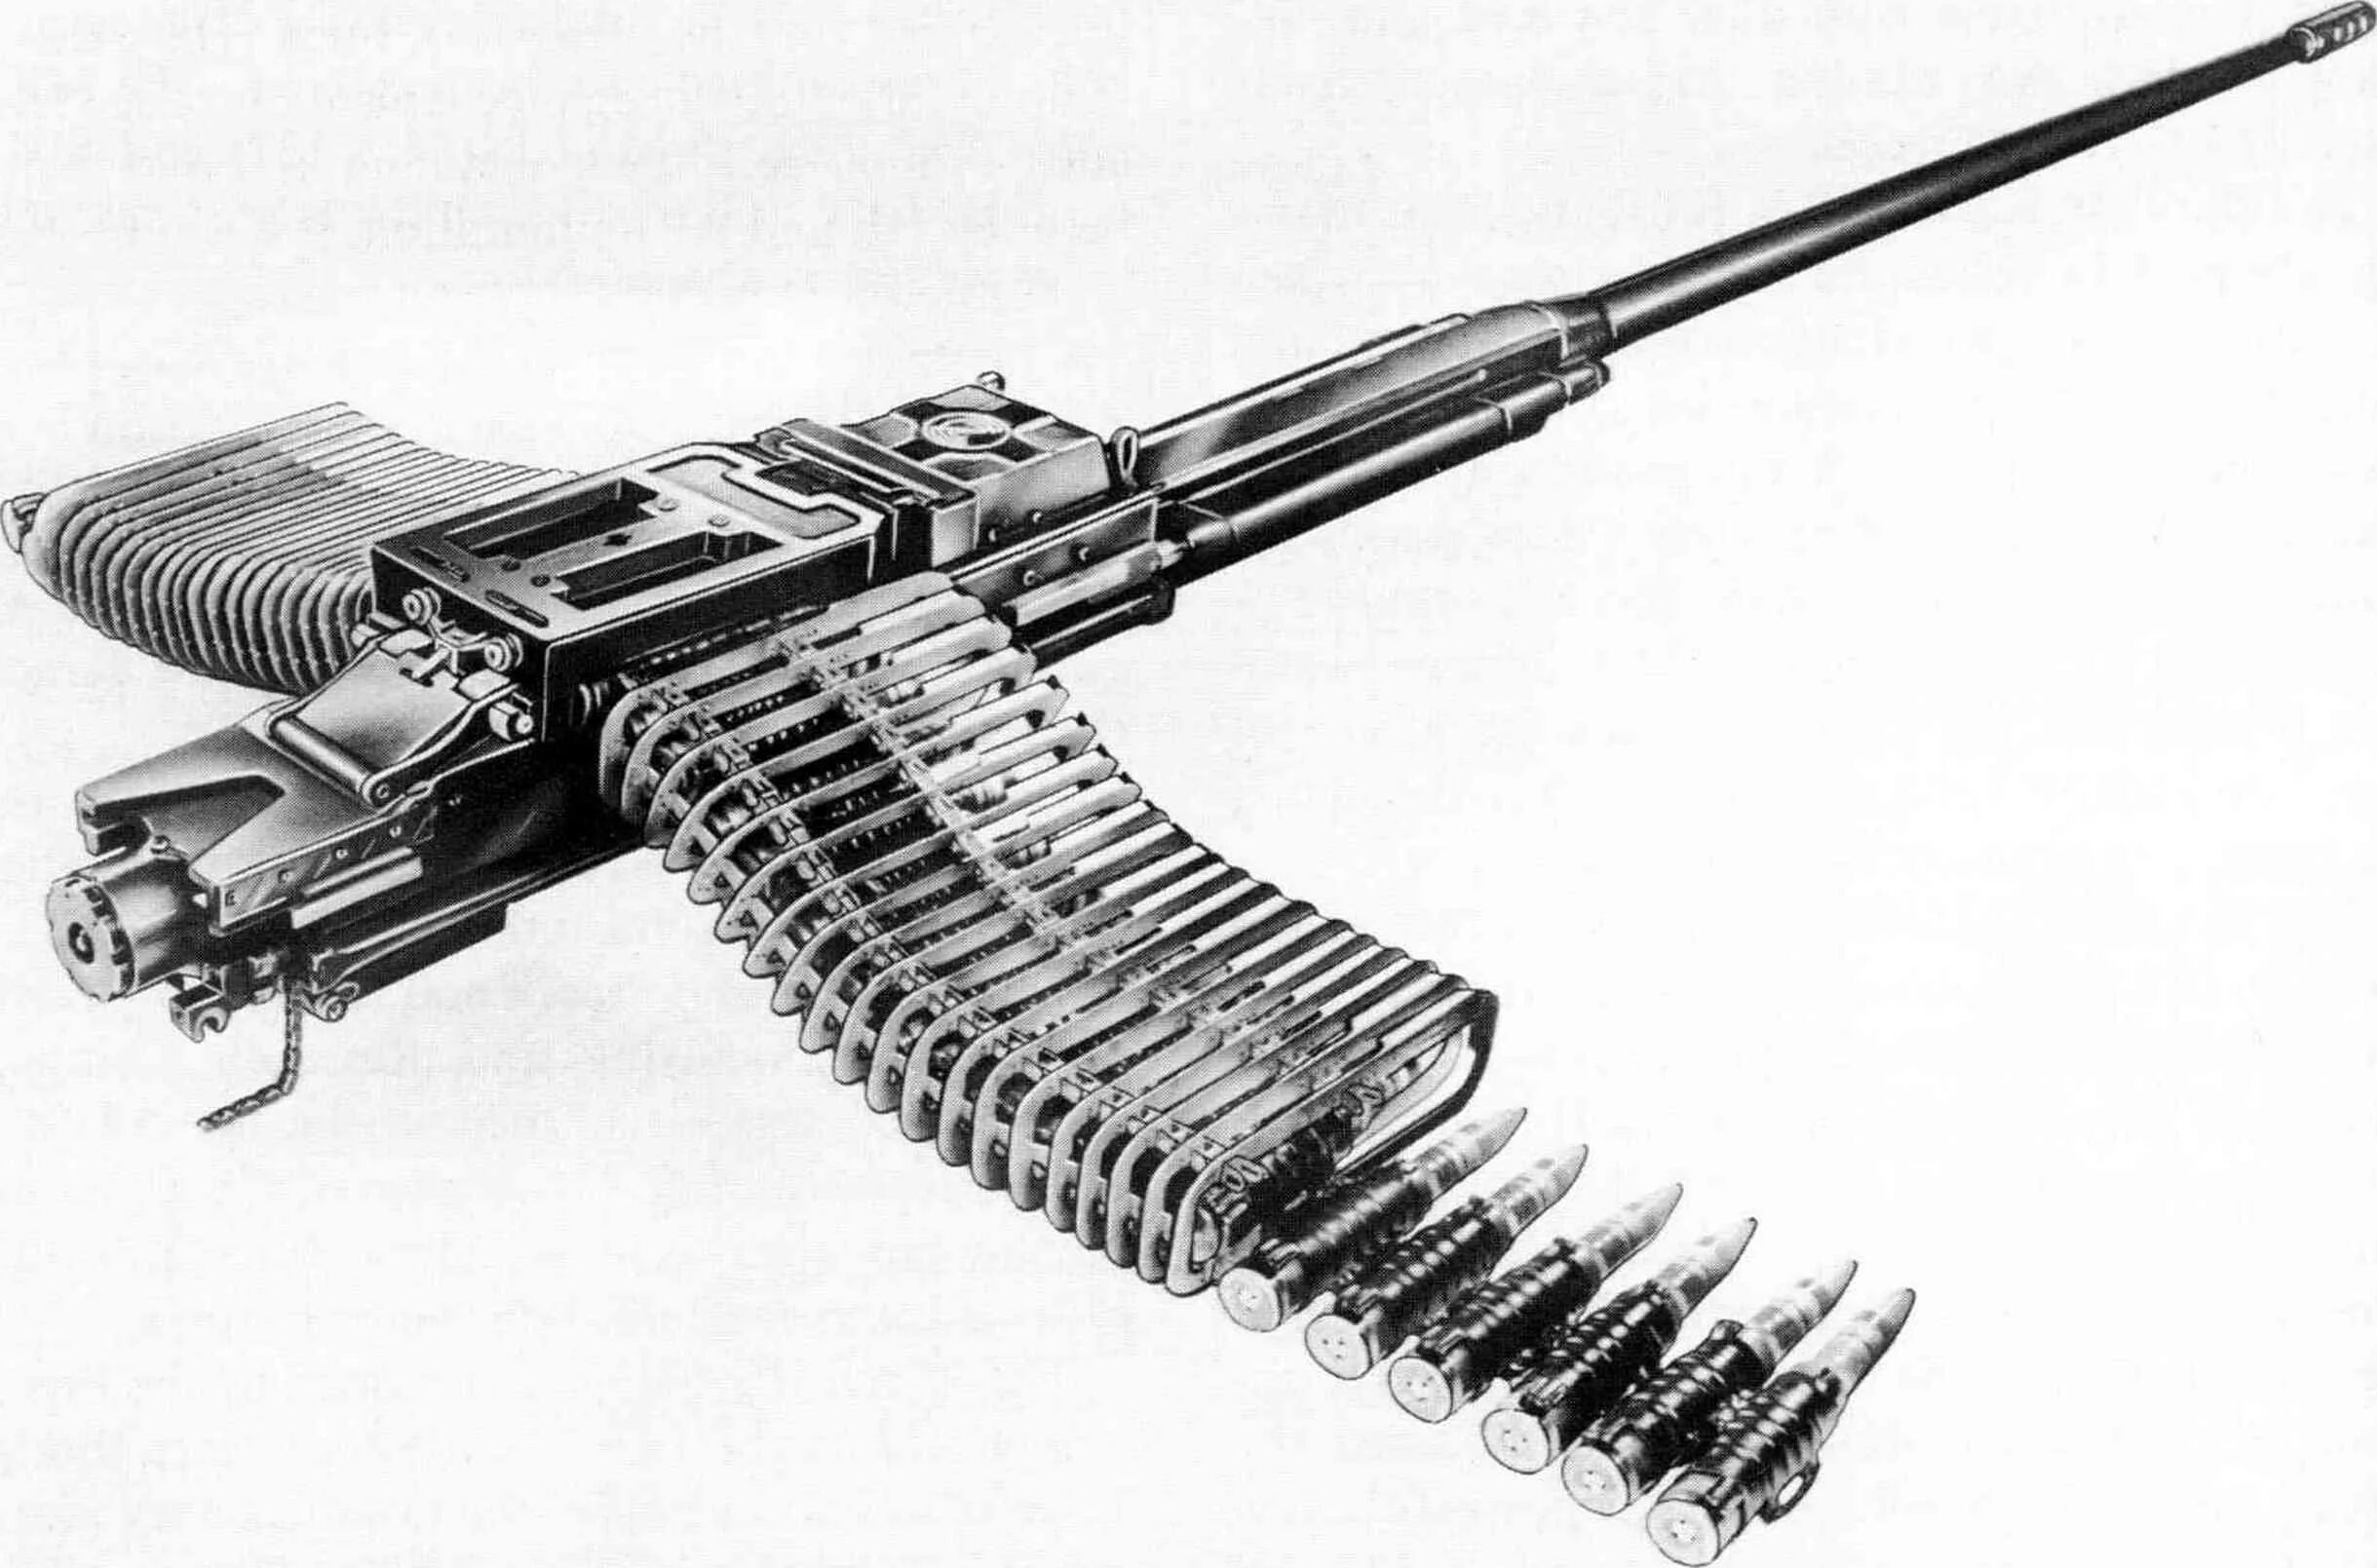 Крупнокалиберный пулемет CIS 50mg. M230 пулемет. CIS 50 MG пулемет. Крупнокалиберный пулемет MG 131.